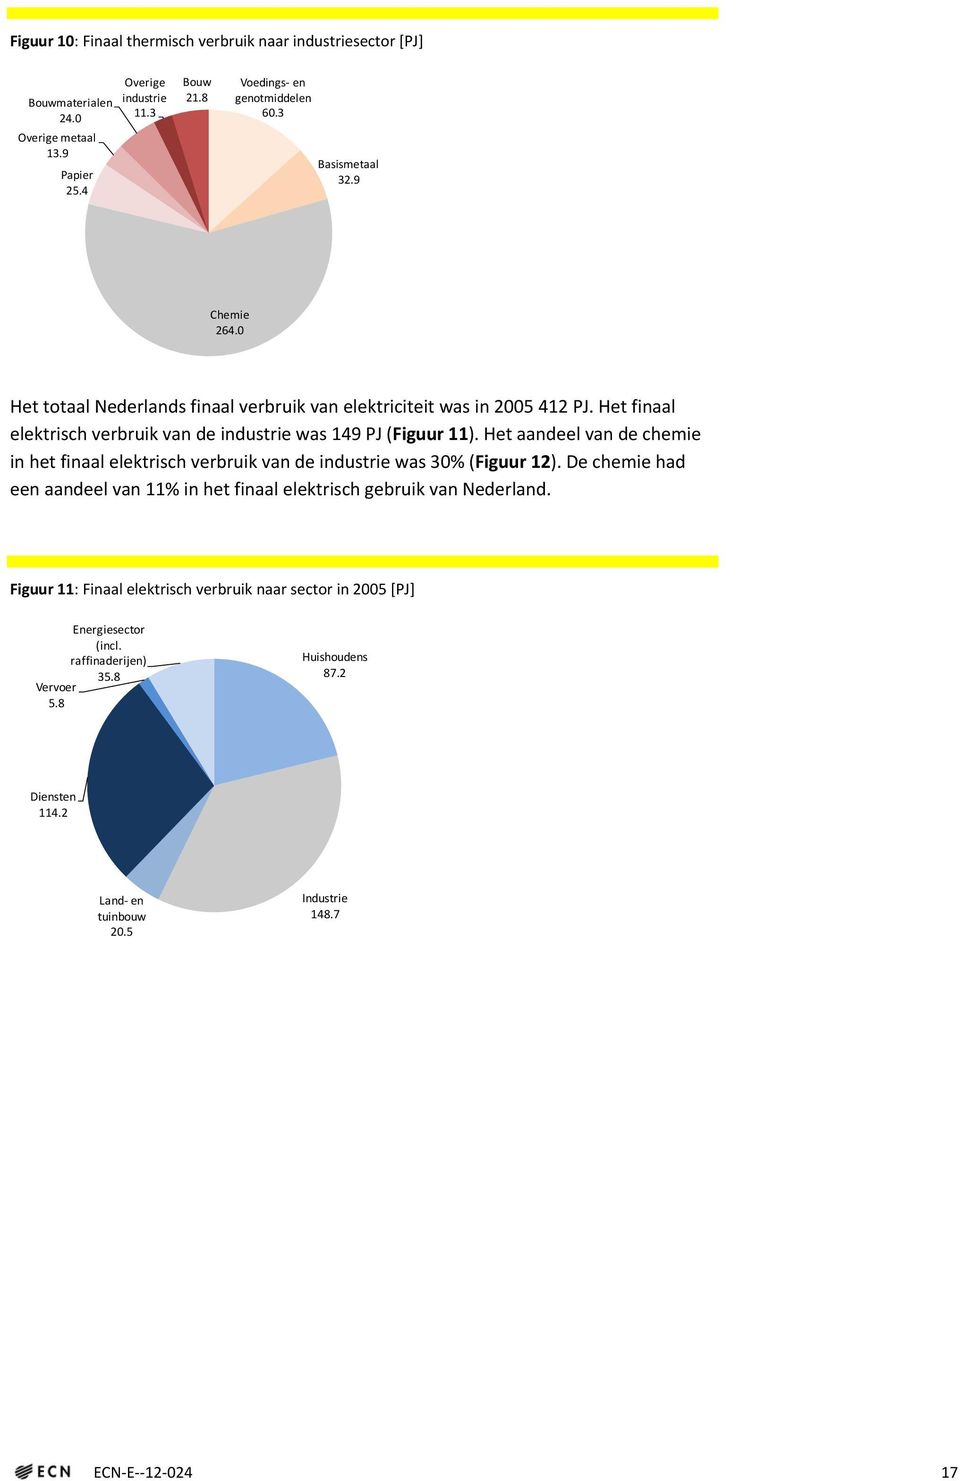 Het aandeel van de chemie in het finaal elektrisch verbruik van de industrie was 30% (Figuur 12). De chemie had een aandeel van 11% in het finaal elektrisch gebruik van Nederland.